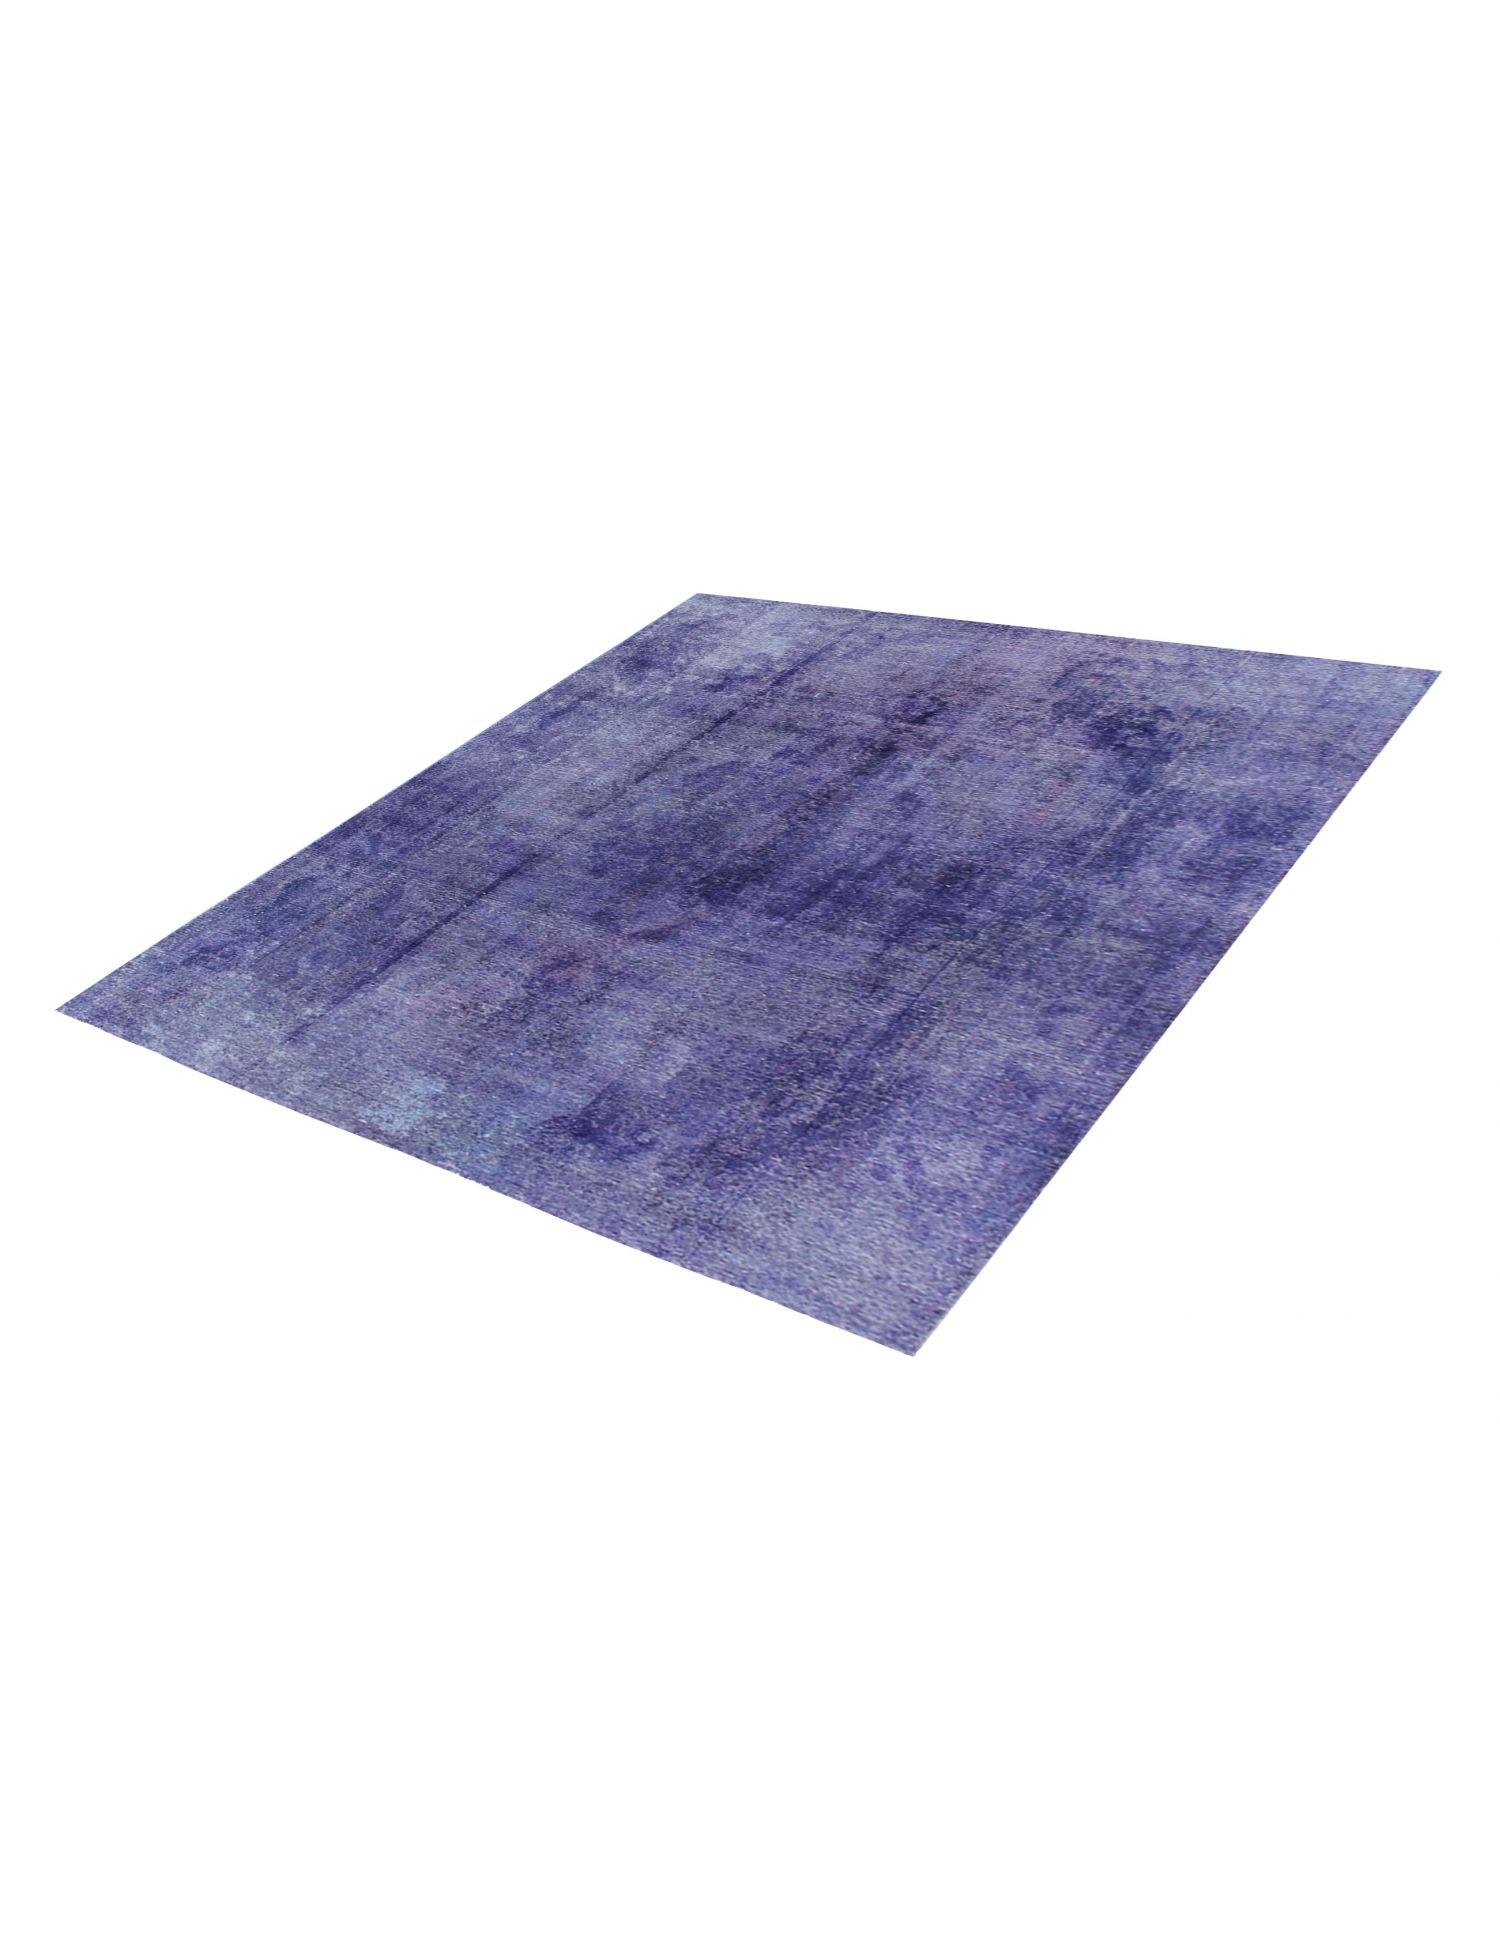 Persischer Vintage Teppich  blau <br/>195 x 195 cm